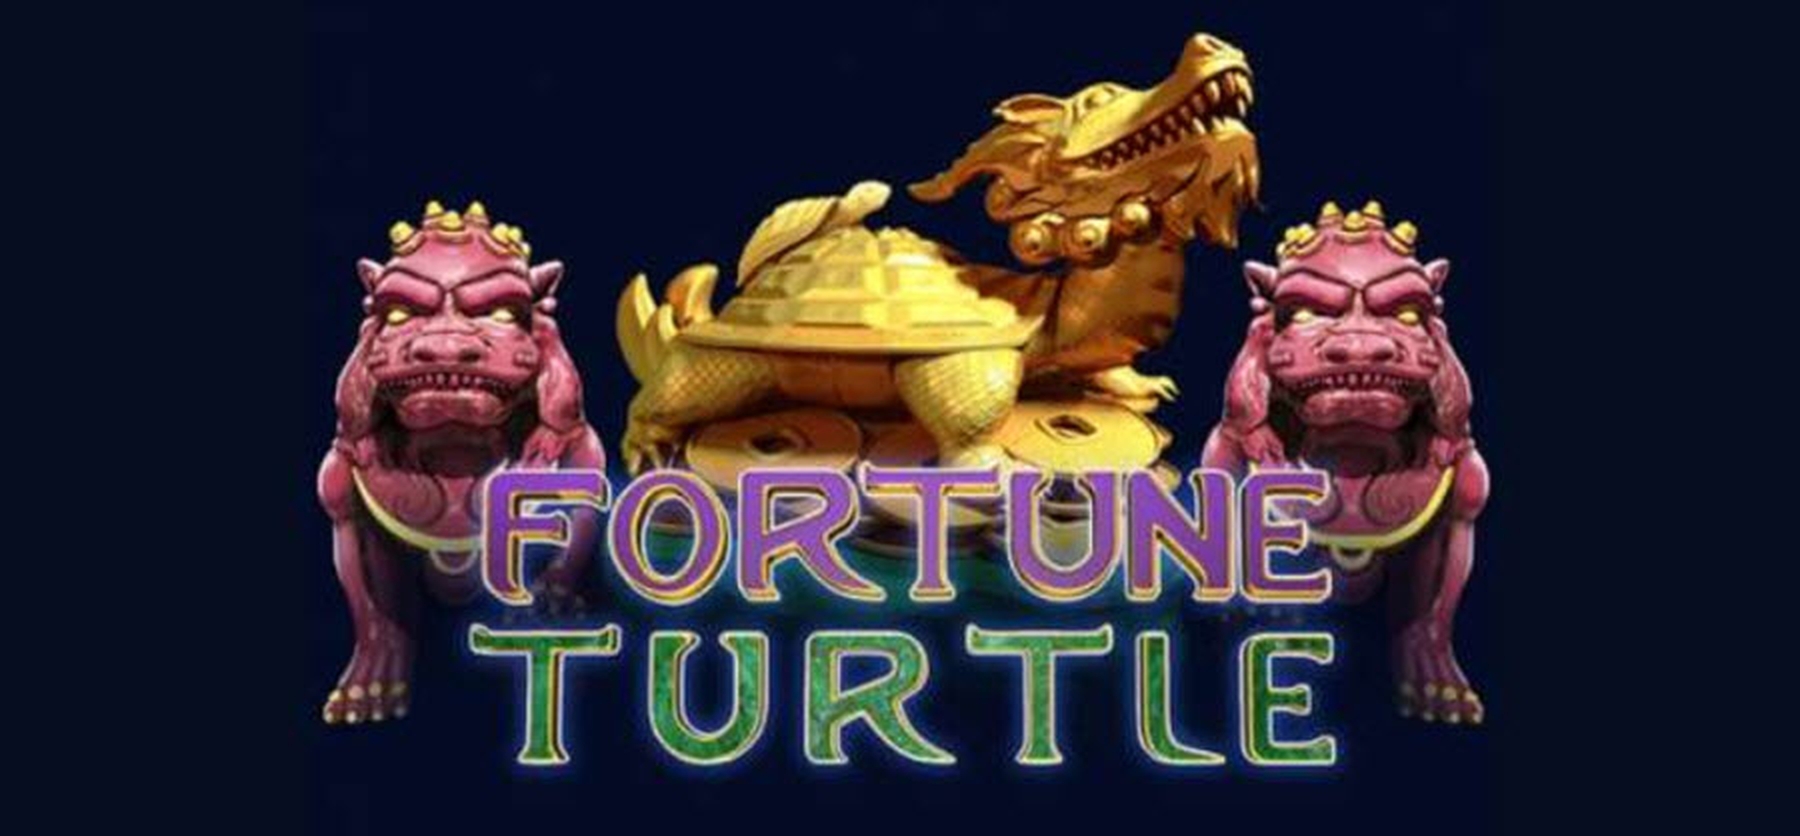 Fortune turtle demo